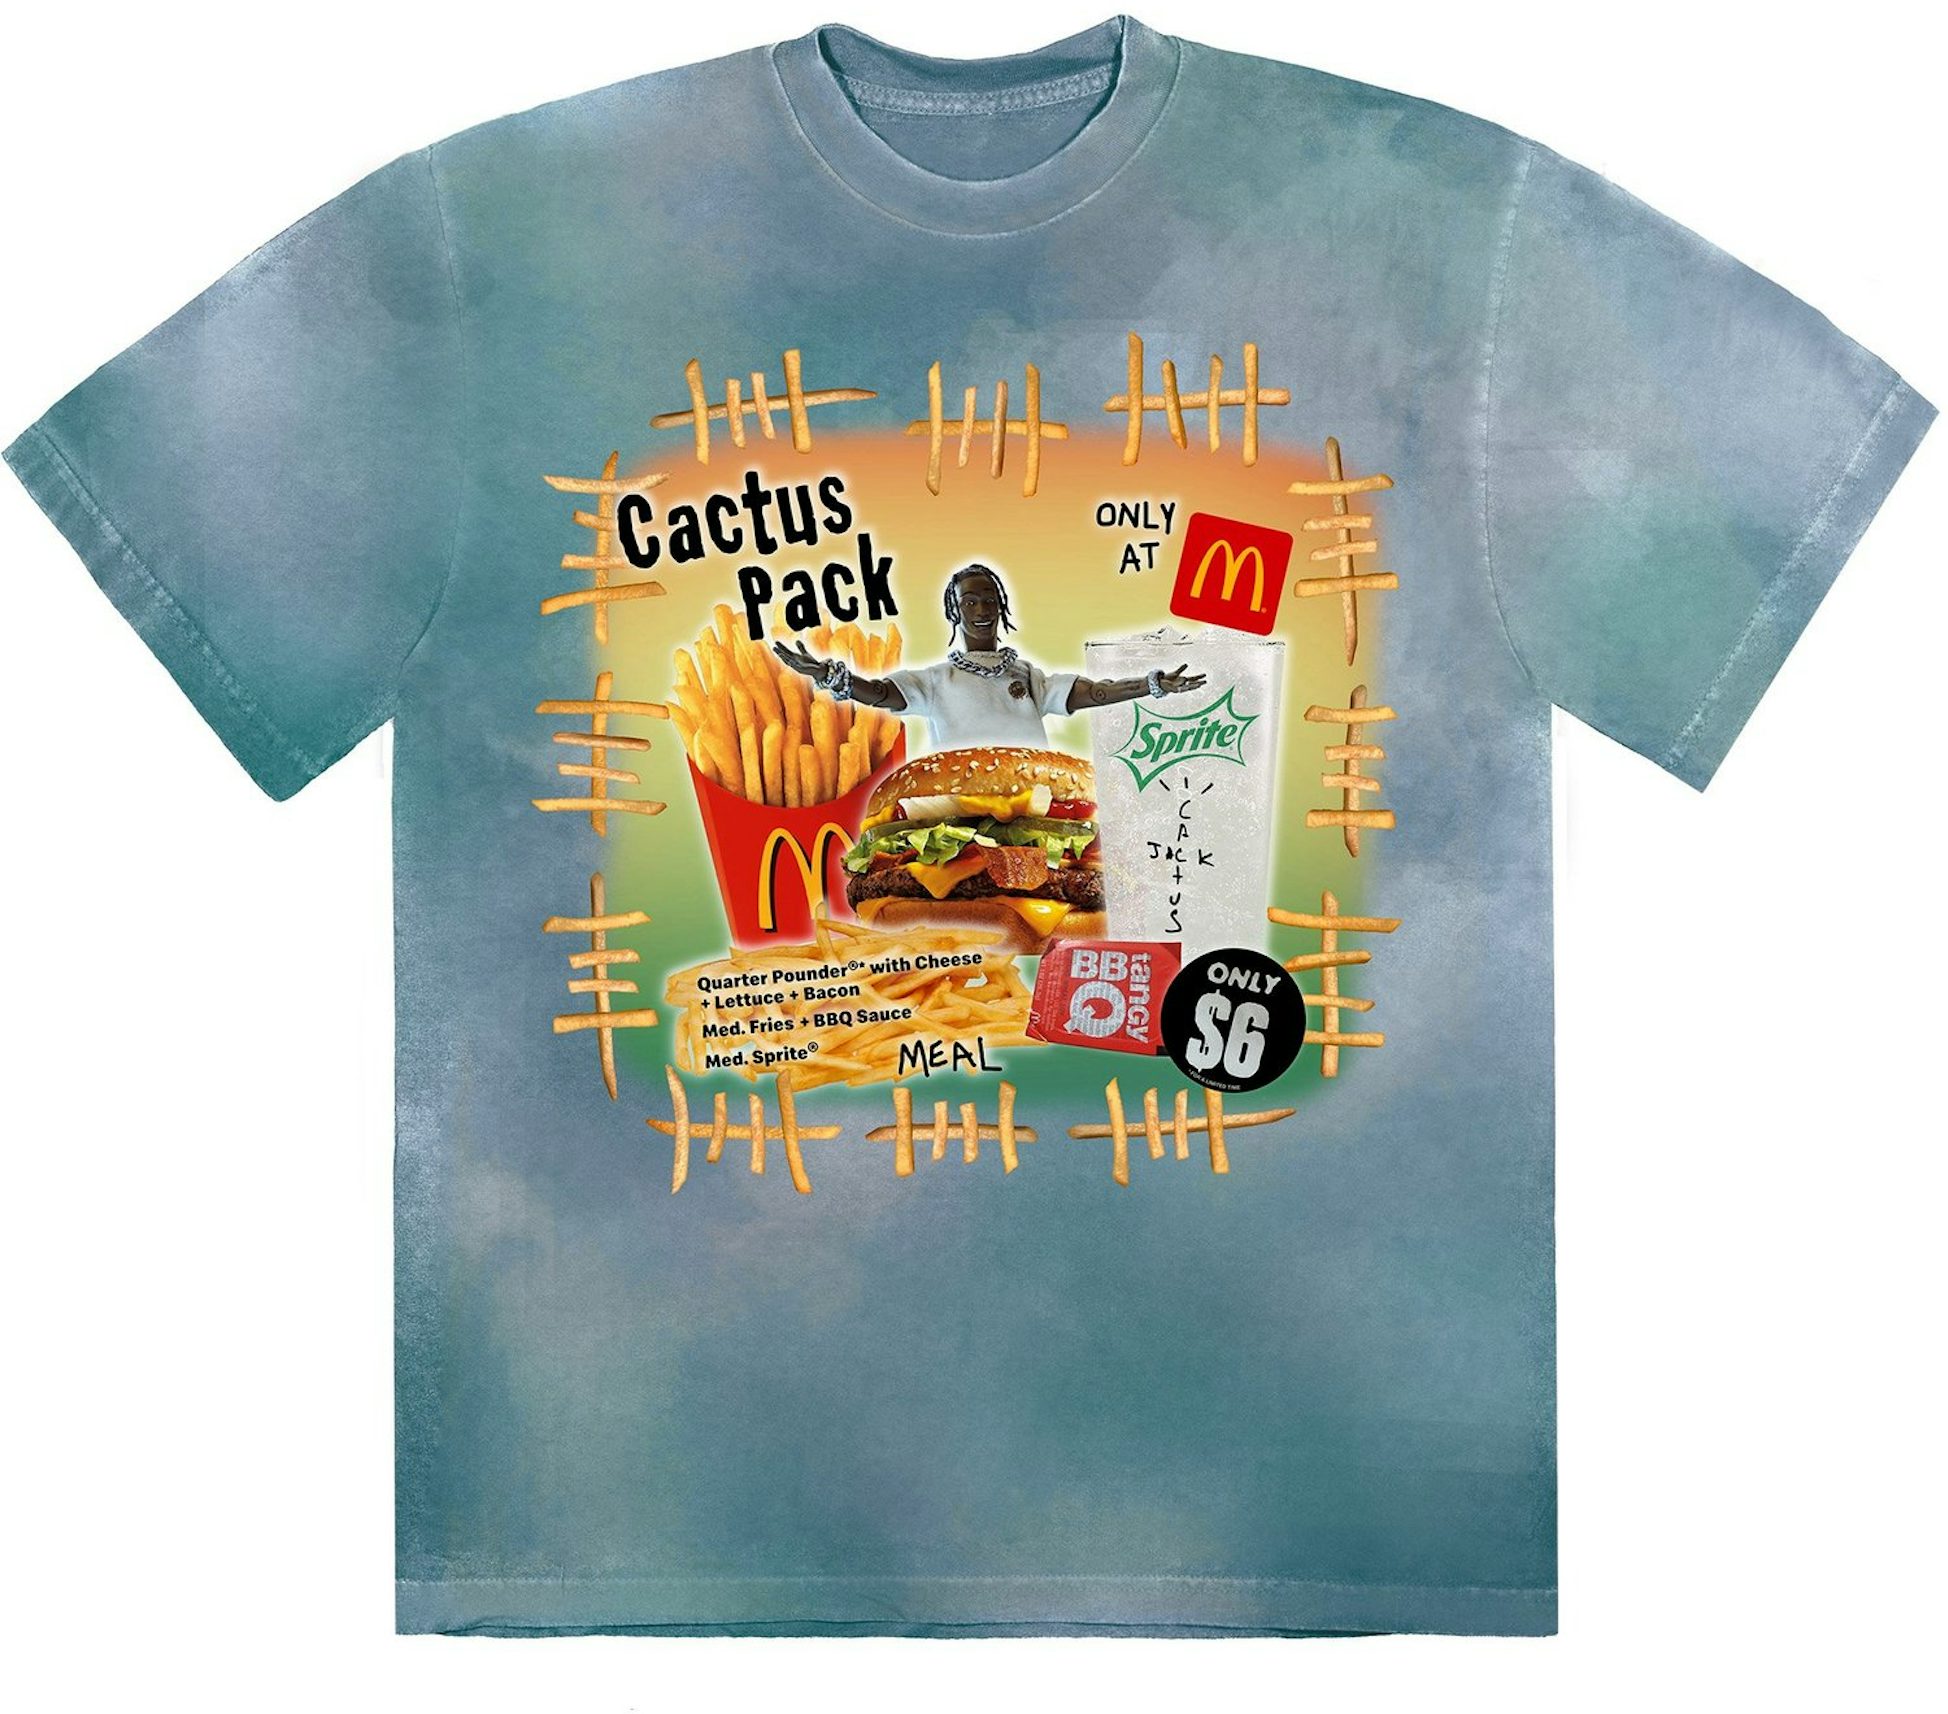 Travis Scott Cactus Jack Laflame Rapper Graphic Black Rap T-Shirt Size Med  Rare